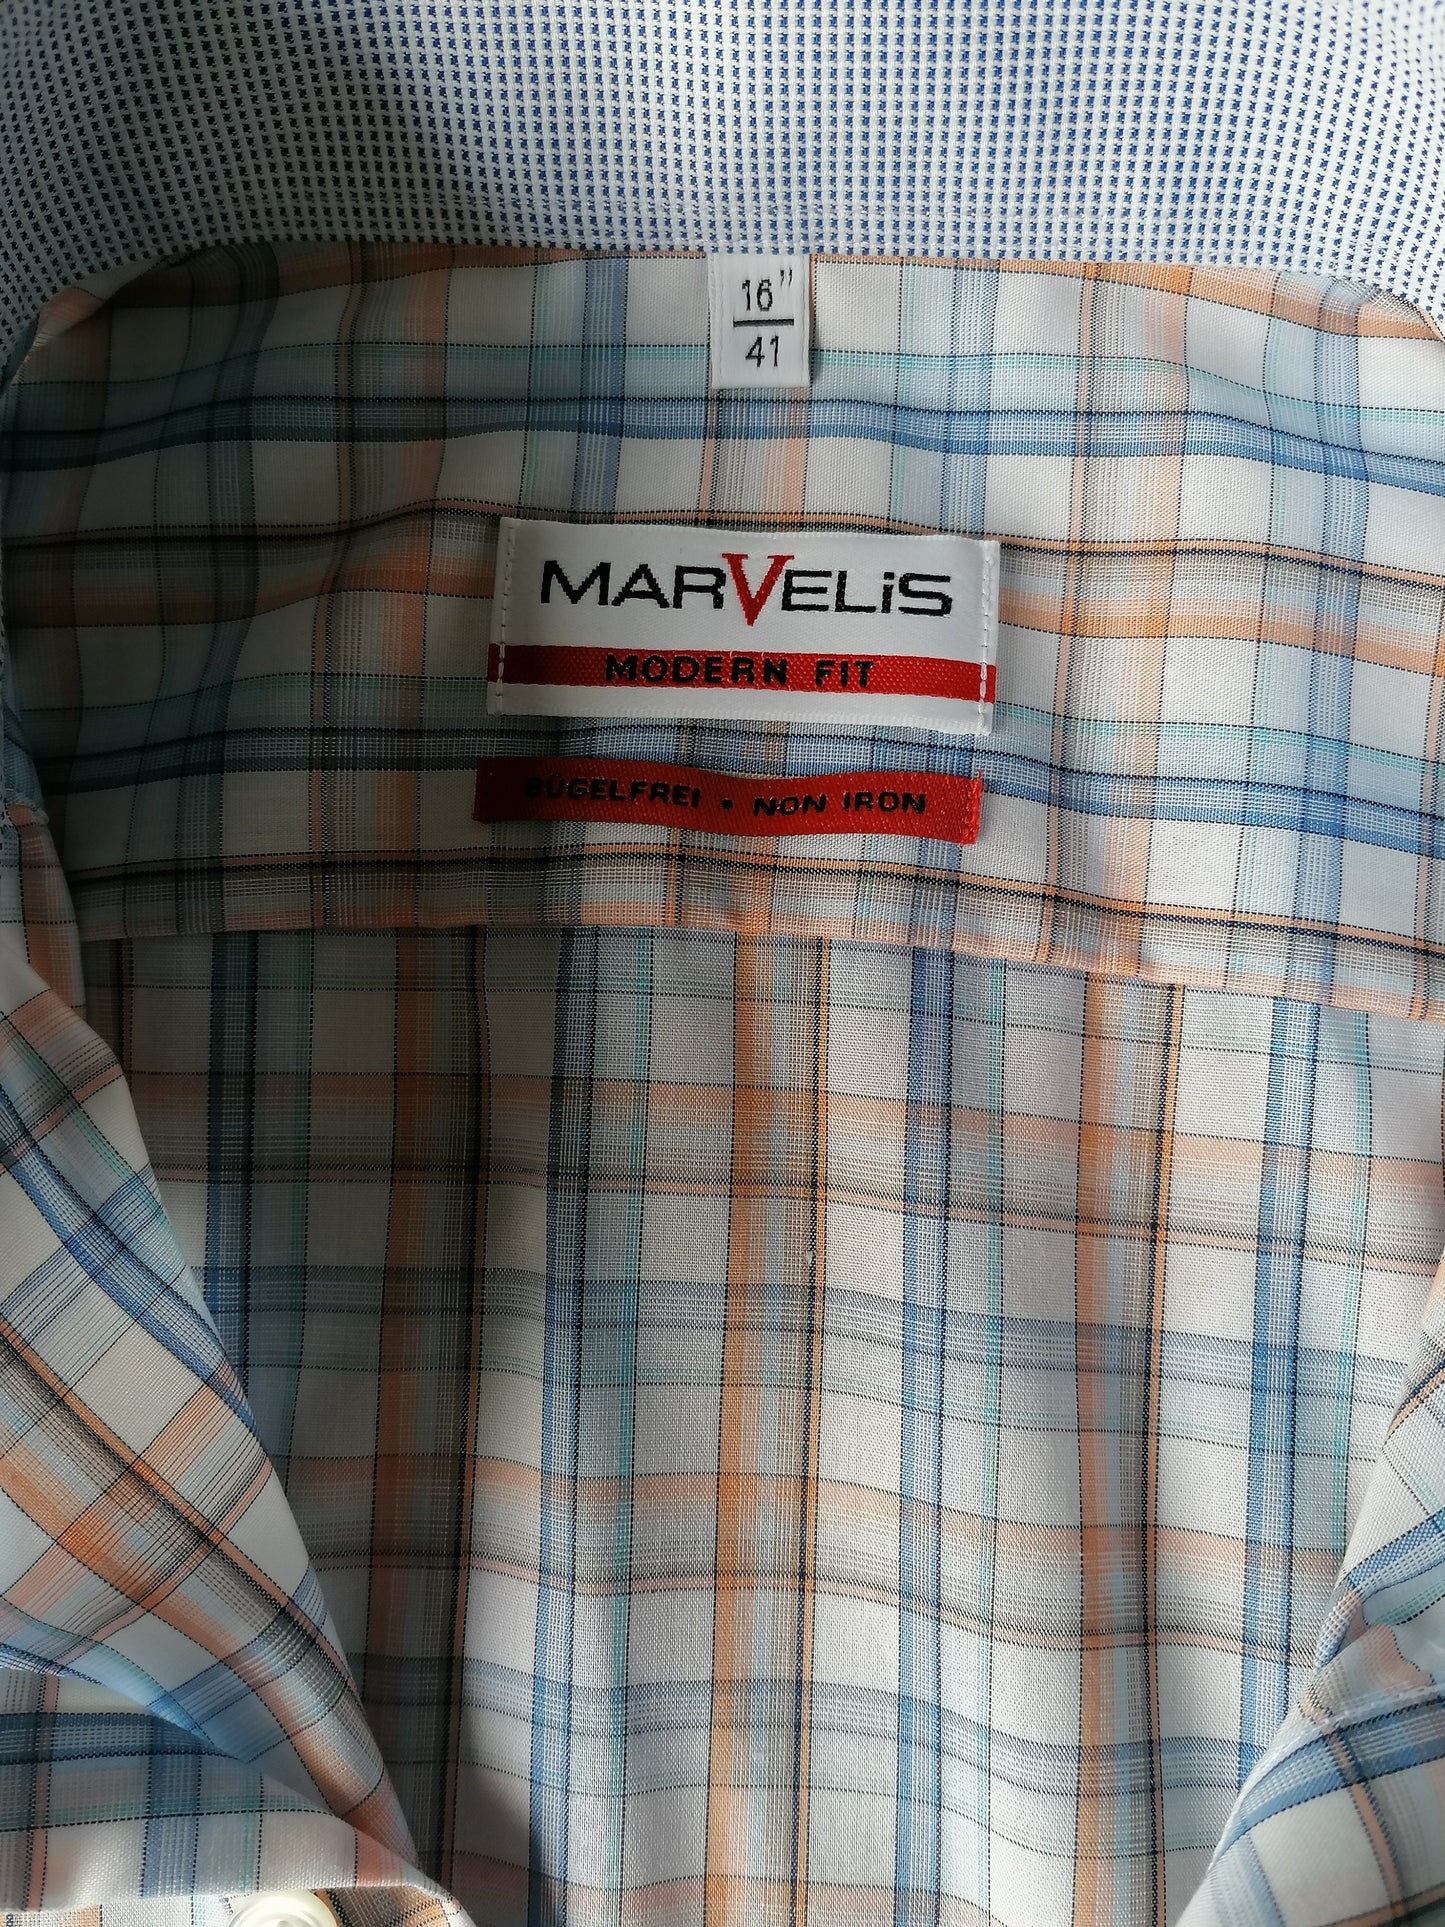 Sleeve corta della camicia Marvelis. Arancia bianca blu controllata. Taglia 41 / L. MODERNIT FIT.